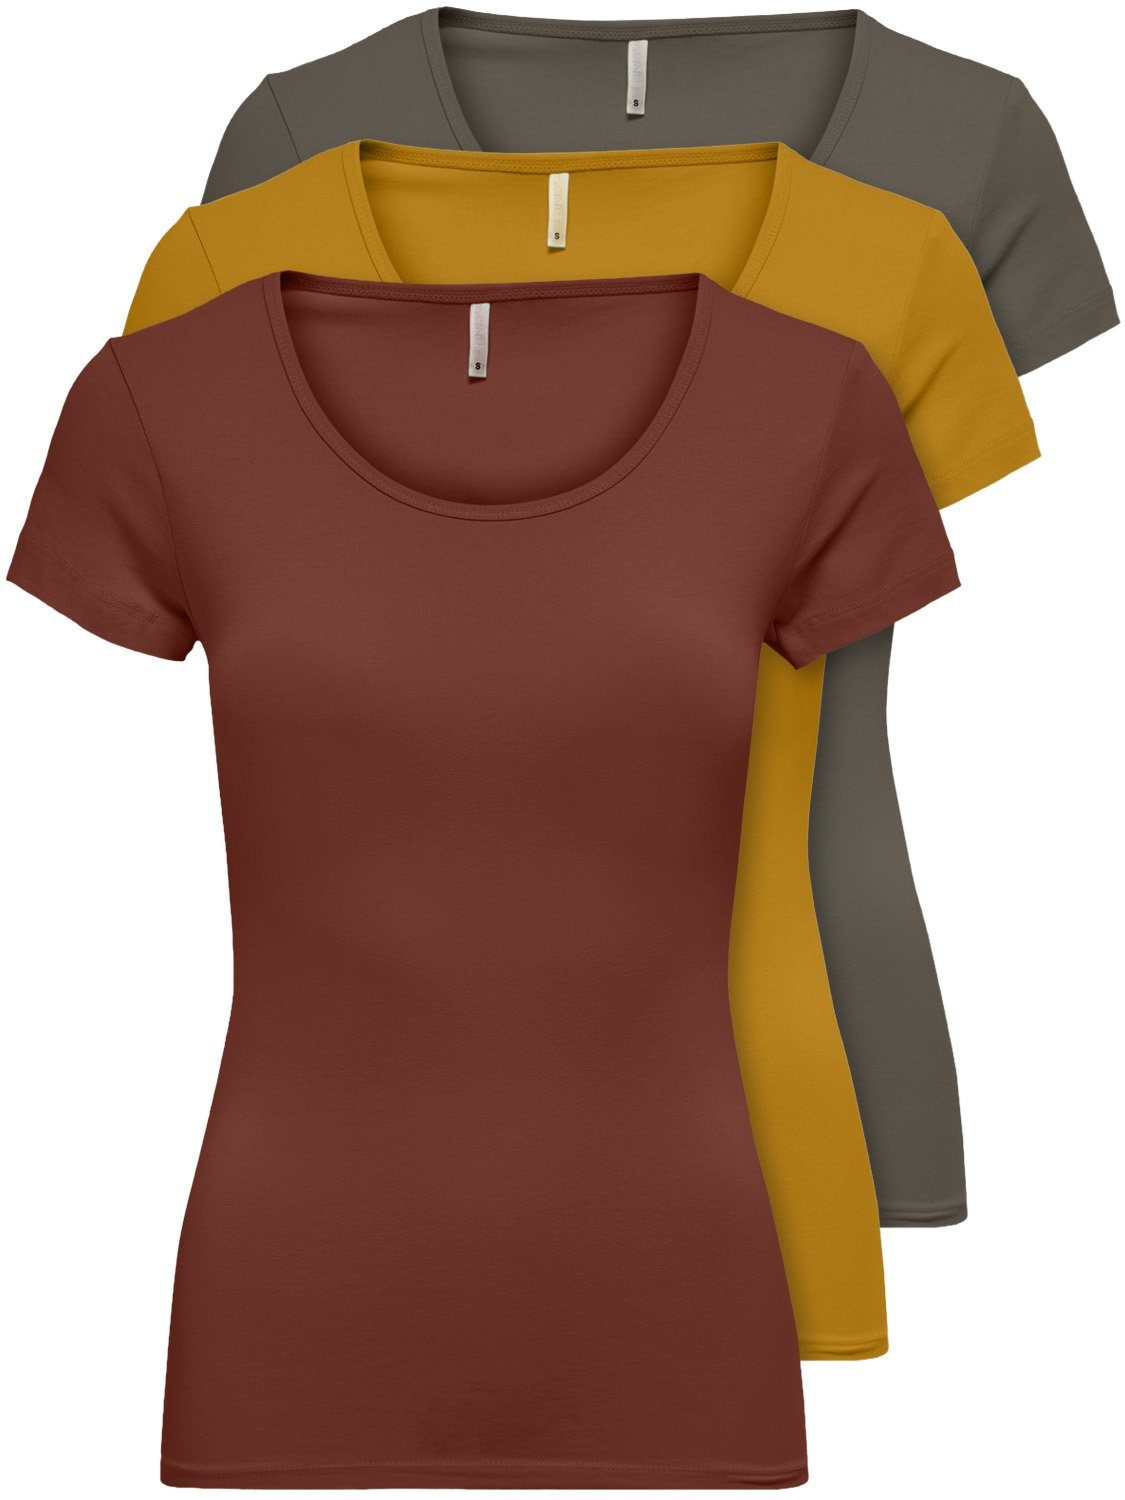 Unifarbene Damen T-Shirts online kaufen | OTTO